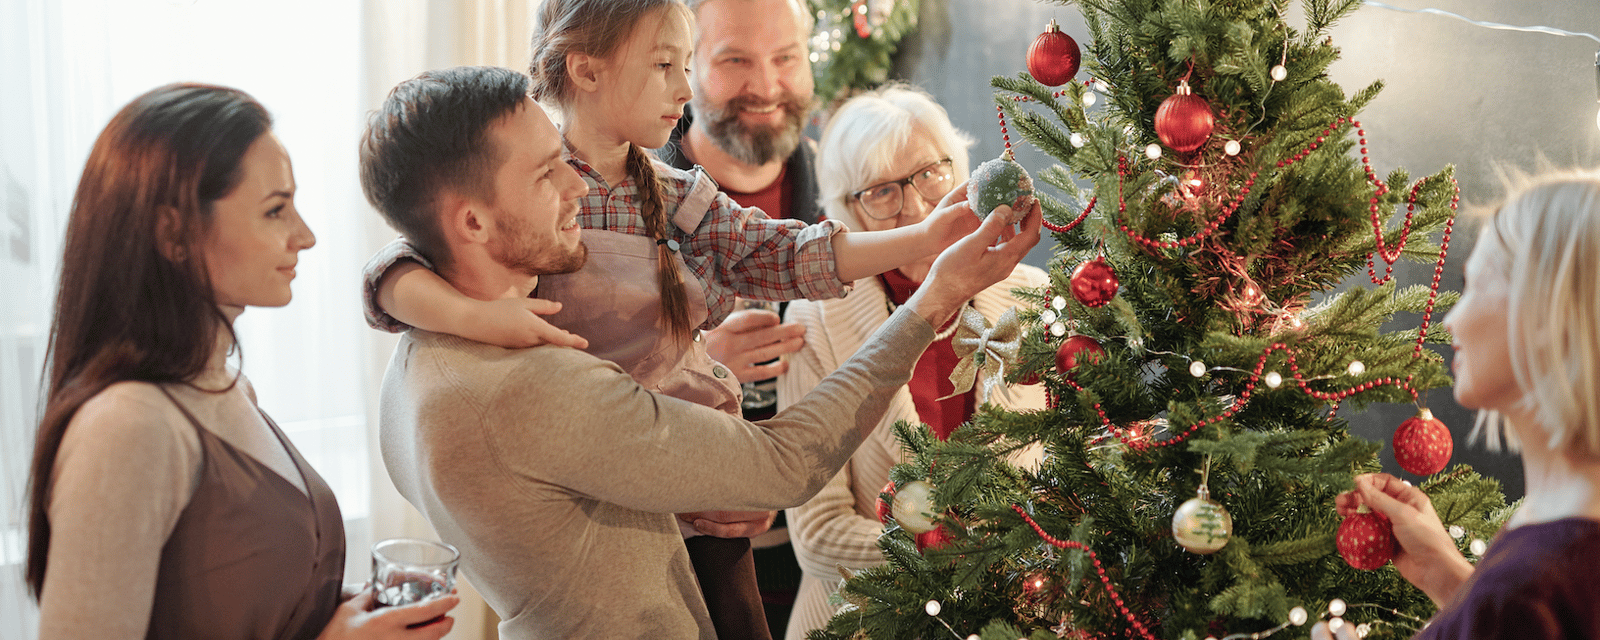 Une étude démontre que les gens qui installent leurs décorations de Noël plus tôt seraient plus heureux.